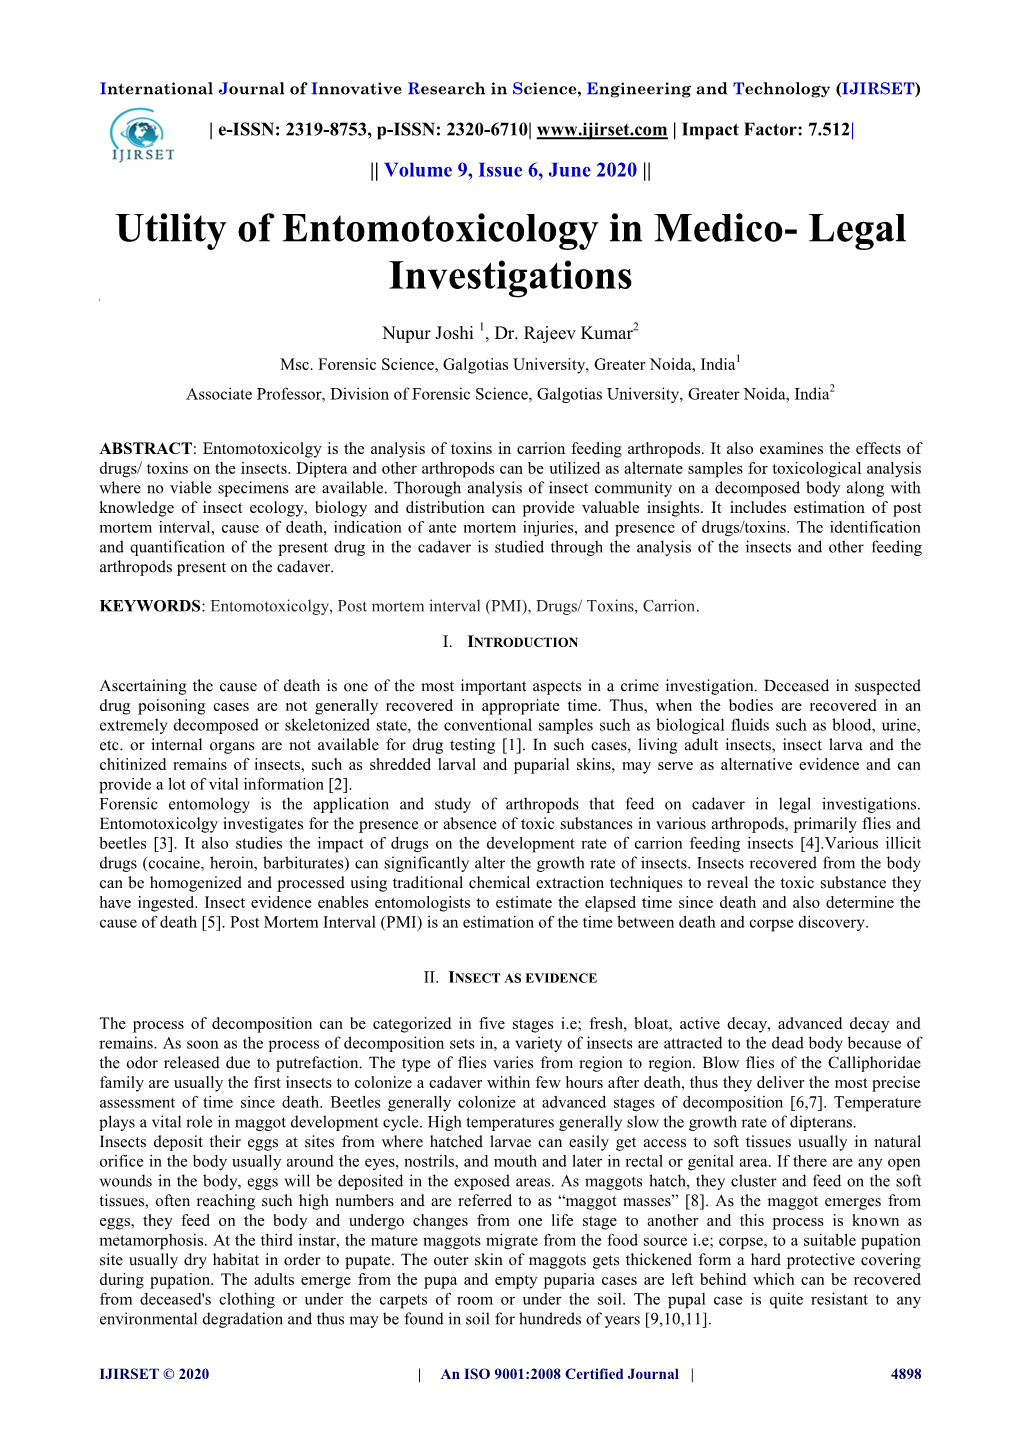 Utility of Entomotoxicology in Medico- Legal Investigations [